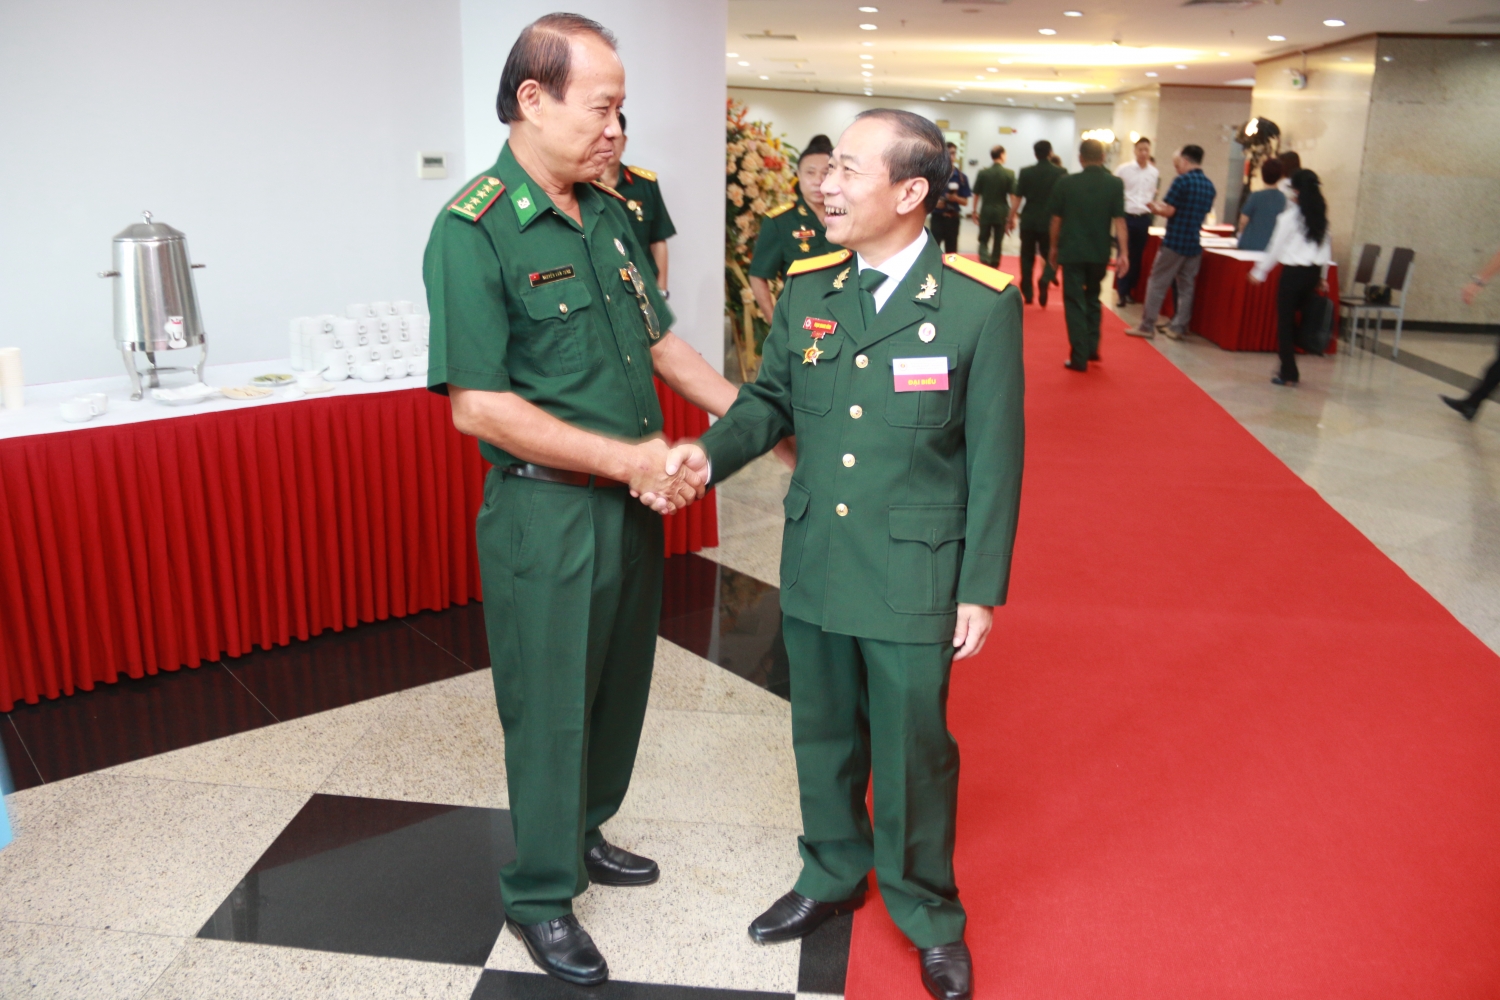 Đại hội đại biểu Hội Cựu chiến binh Tập đoàn Dầu khí Quốc gia Việt Nam lần thứ III, nhiệm kỳ 2022-2027